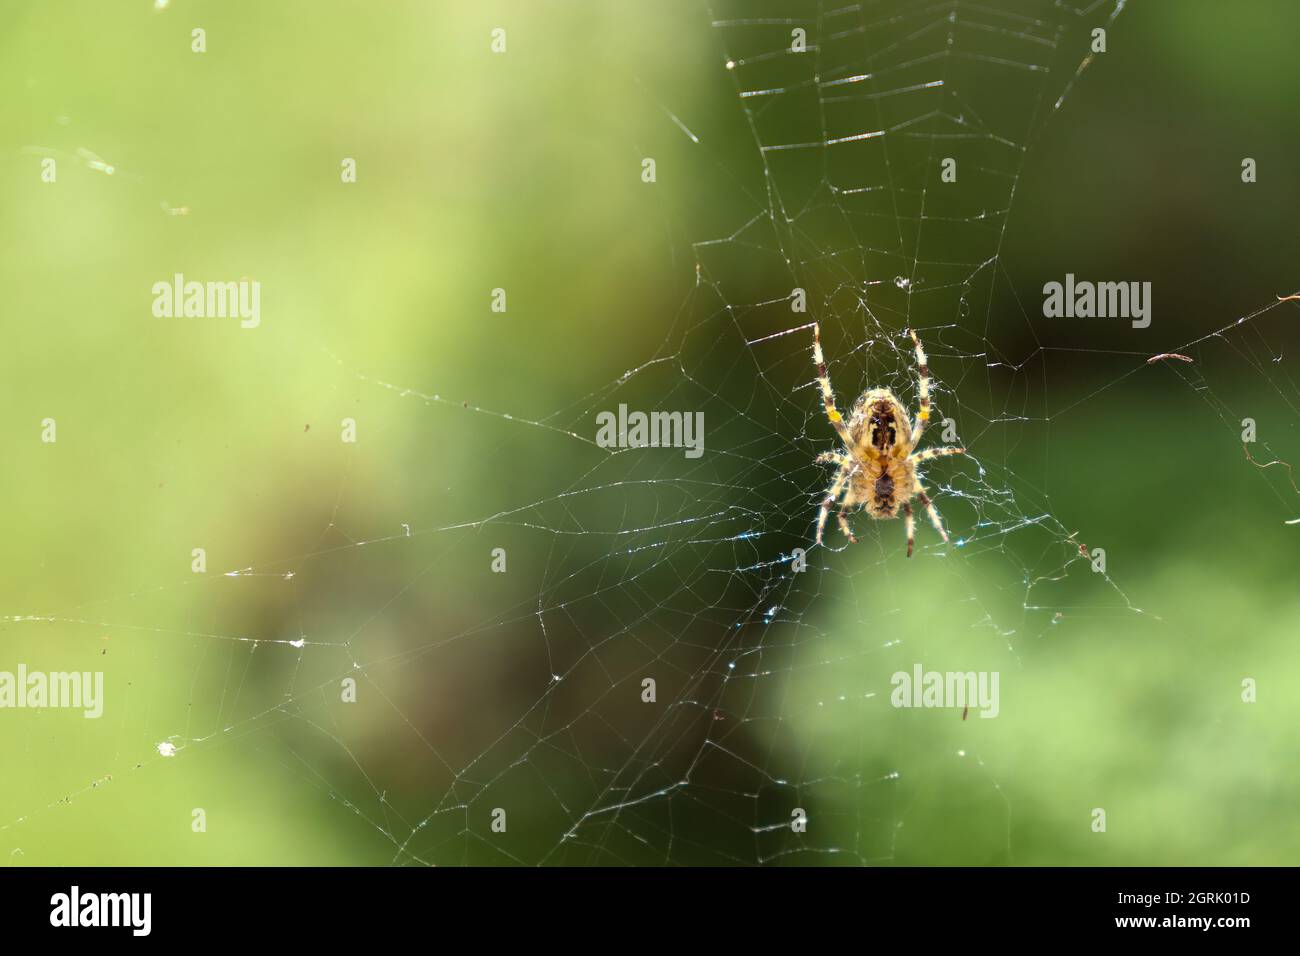 Spider nel web - Spinne im Netz Foto Stock